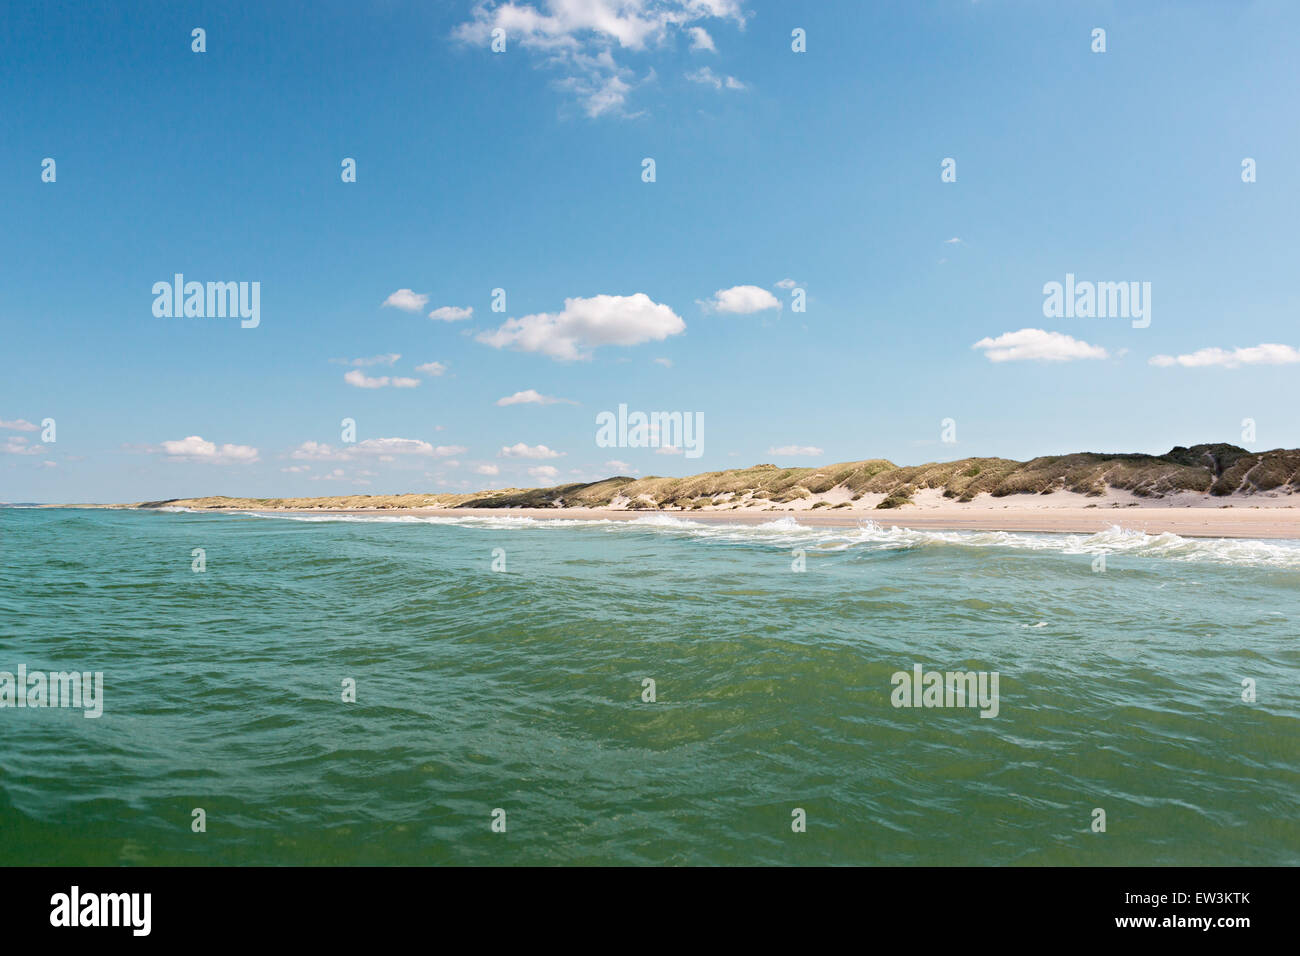 Beach panorama with dune Stock Photo